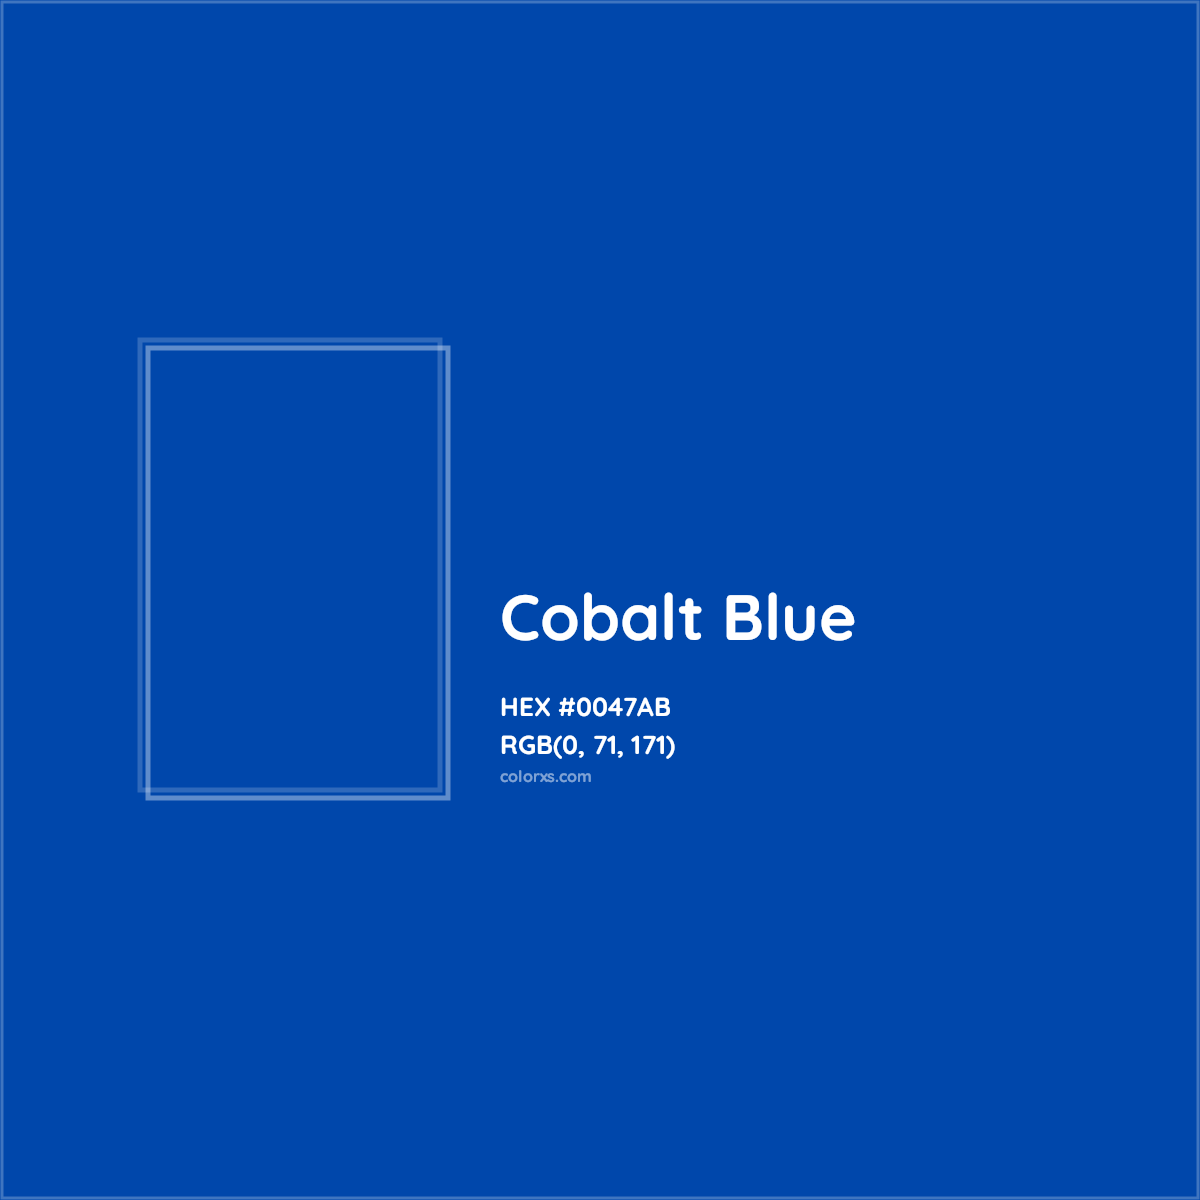 HEX #0047AB Cobalt Blue Color - Color Code